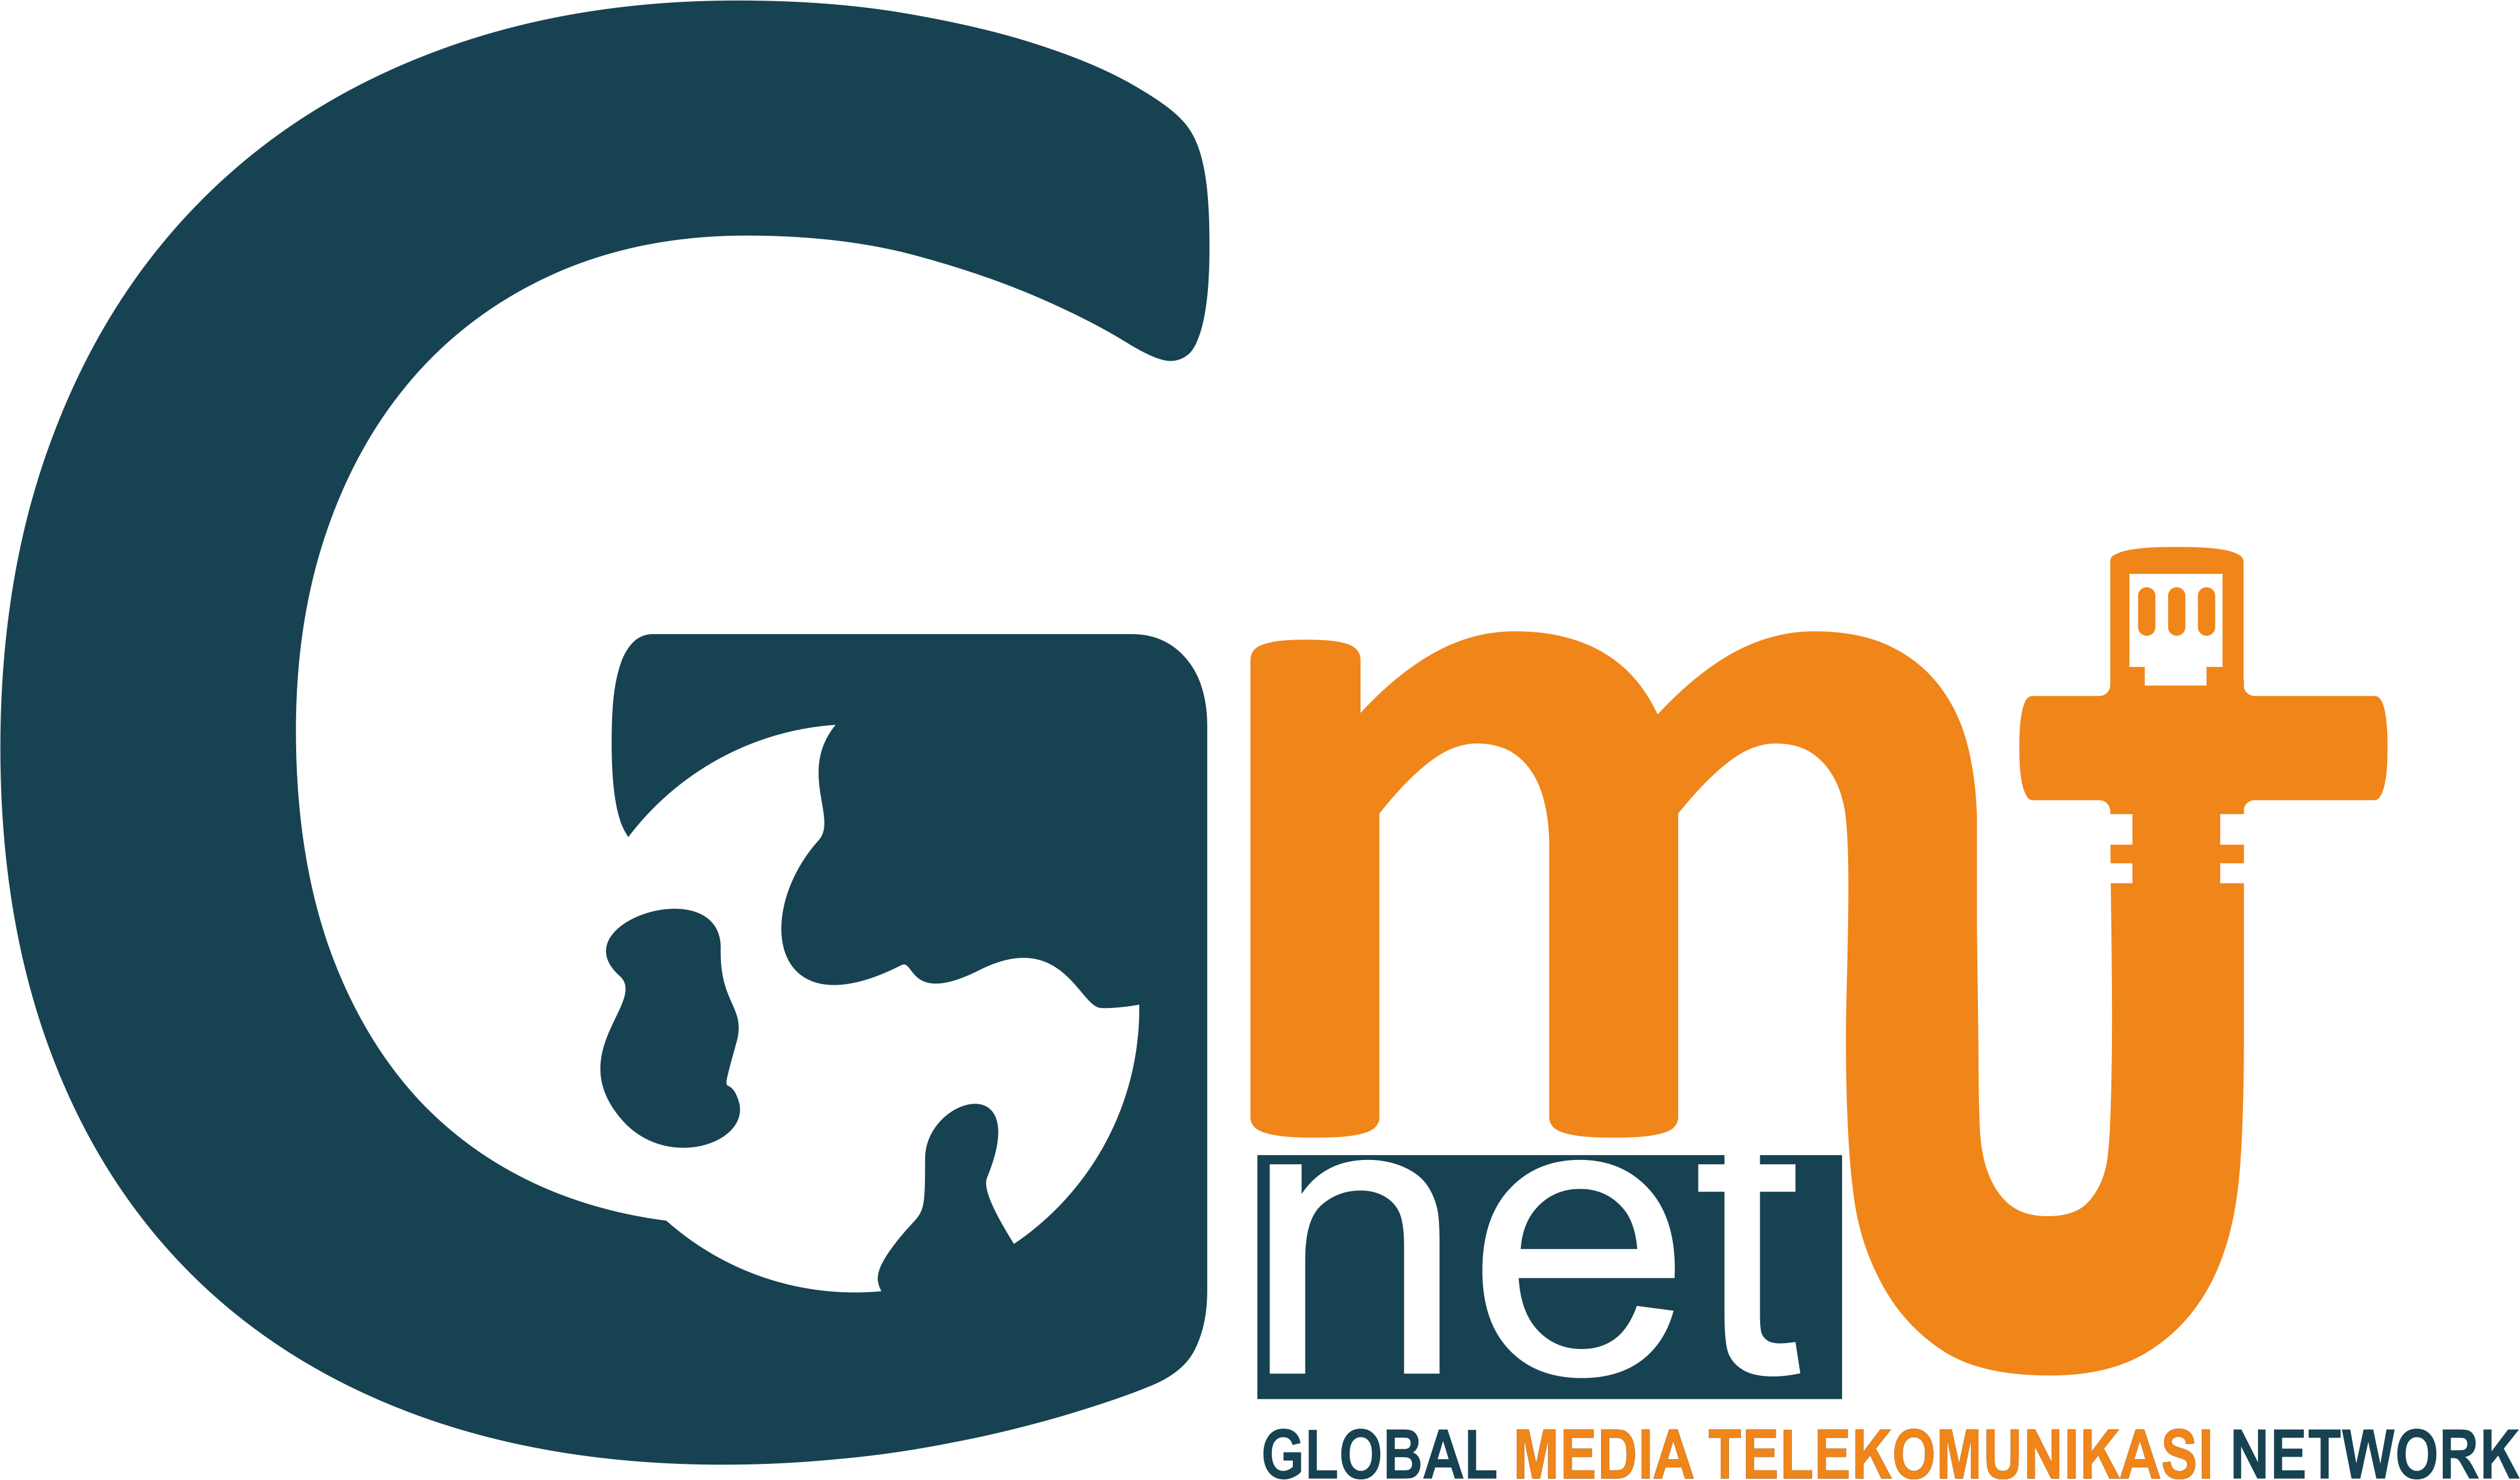 PT GLOBAL MEDIA TELEKOMUNIKASI NETWORK